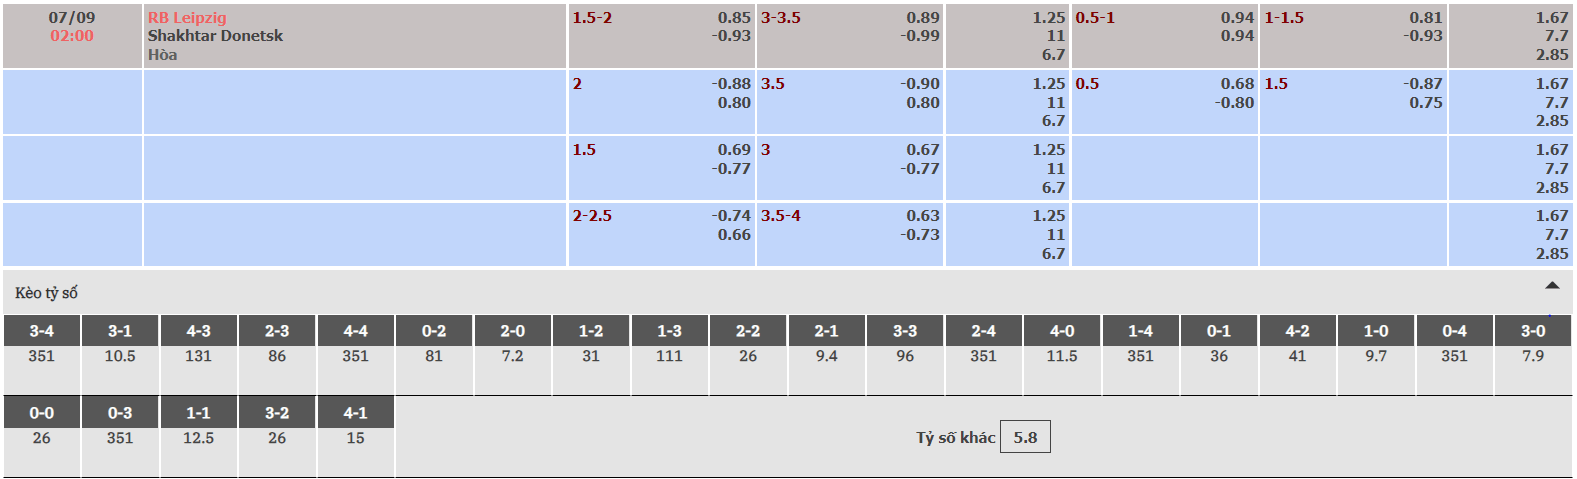 Tỷ lệ kèo nhà cái RB Leipzig vs Shakhtar Donetsk